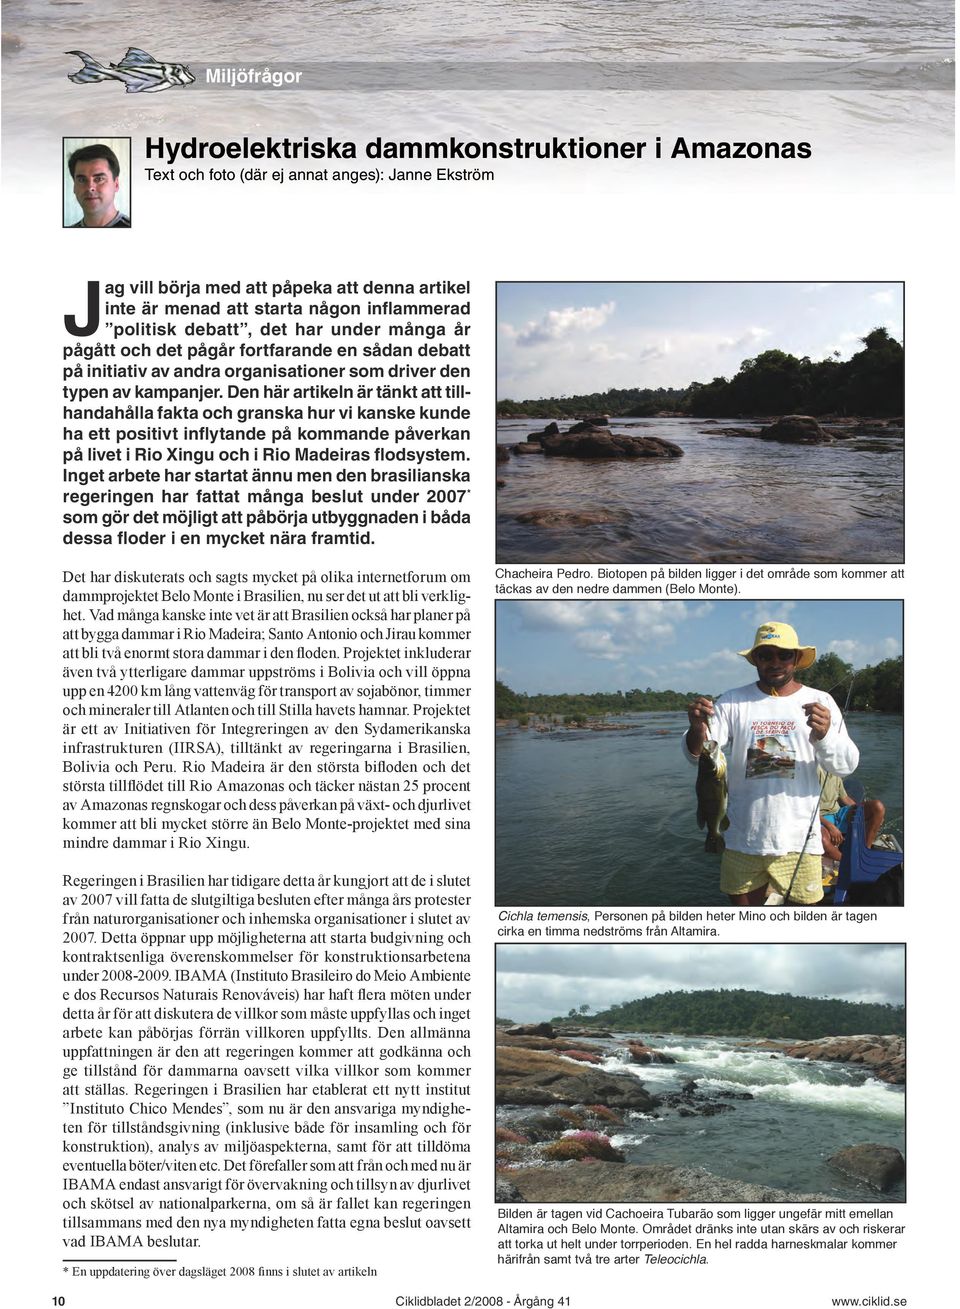 Den här artikeln är tänkt att tillhandahålla fakta och granska hur vi kanske kunde ha ett positivt inflytande på kommande påverkan på livet i Rio Xingu och i Rio Madeiras flodsystem.